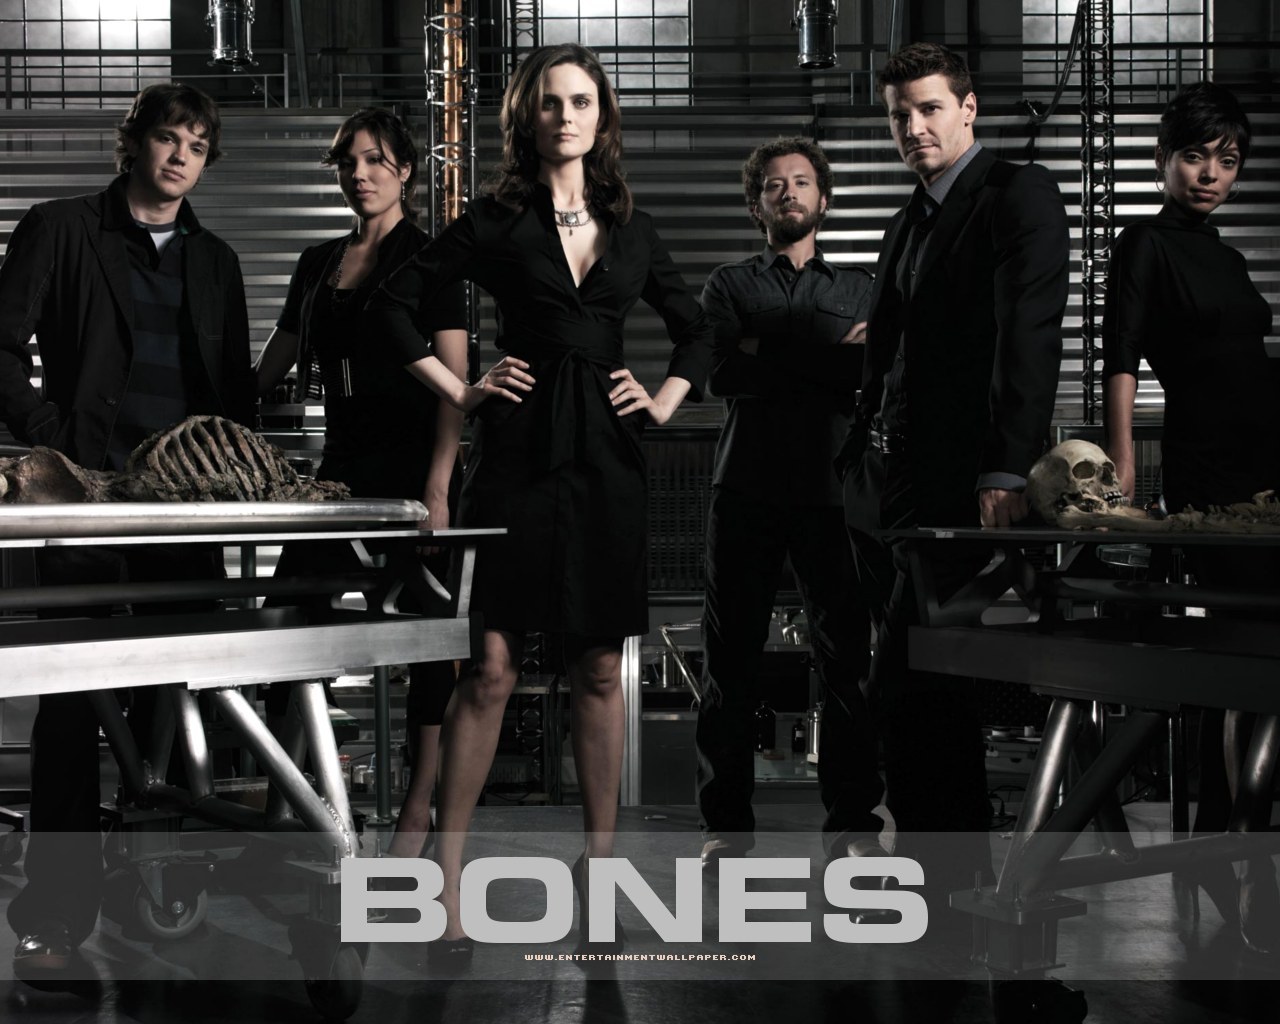 Bones Tv Series HD Poster Wallpaper In